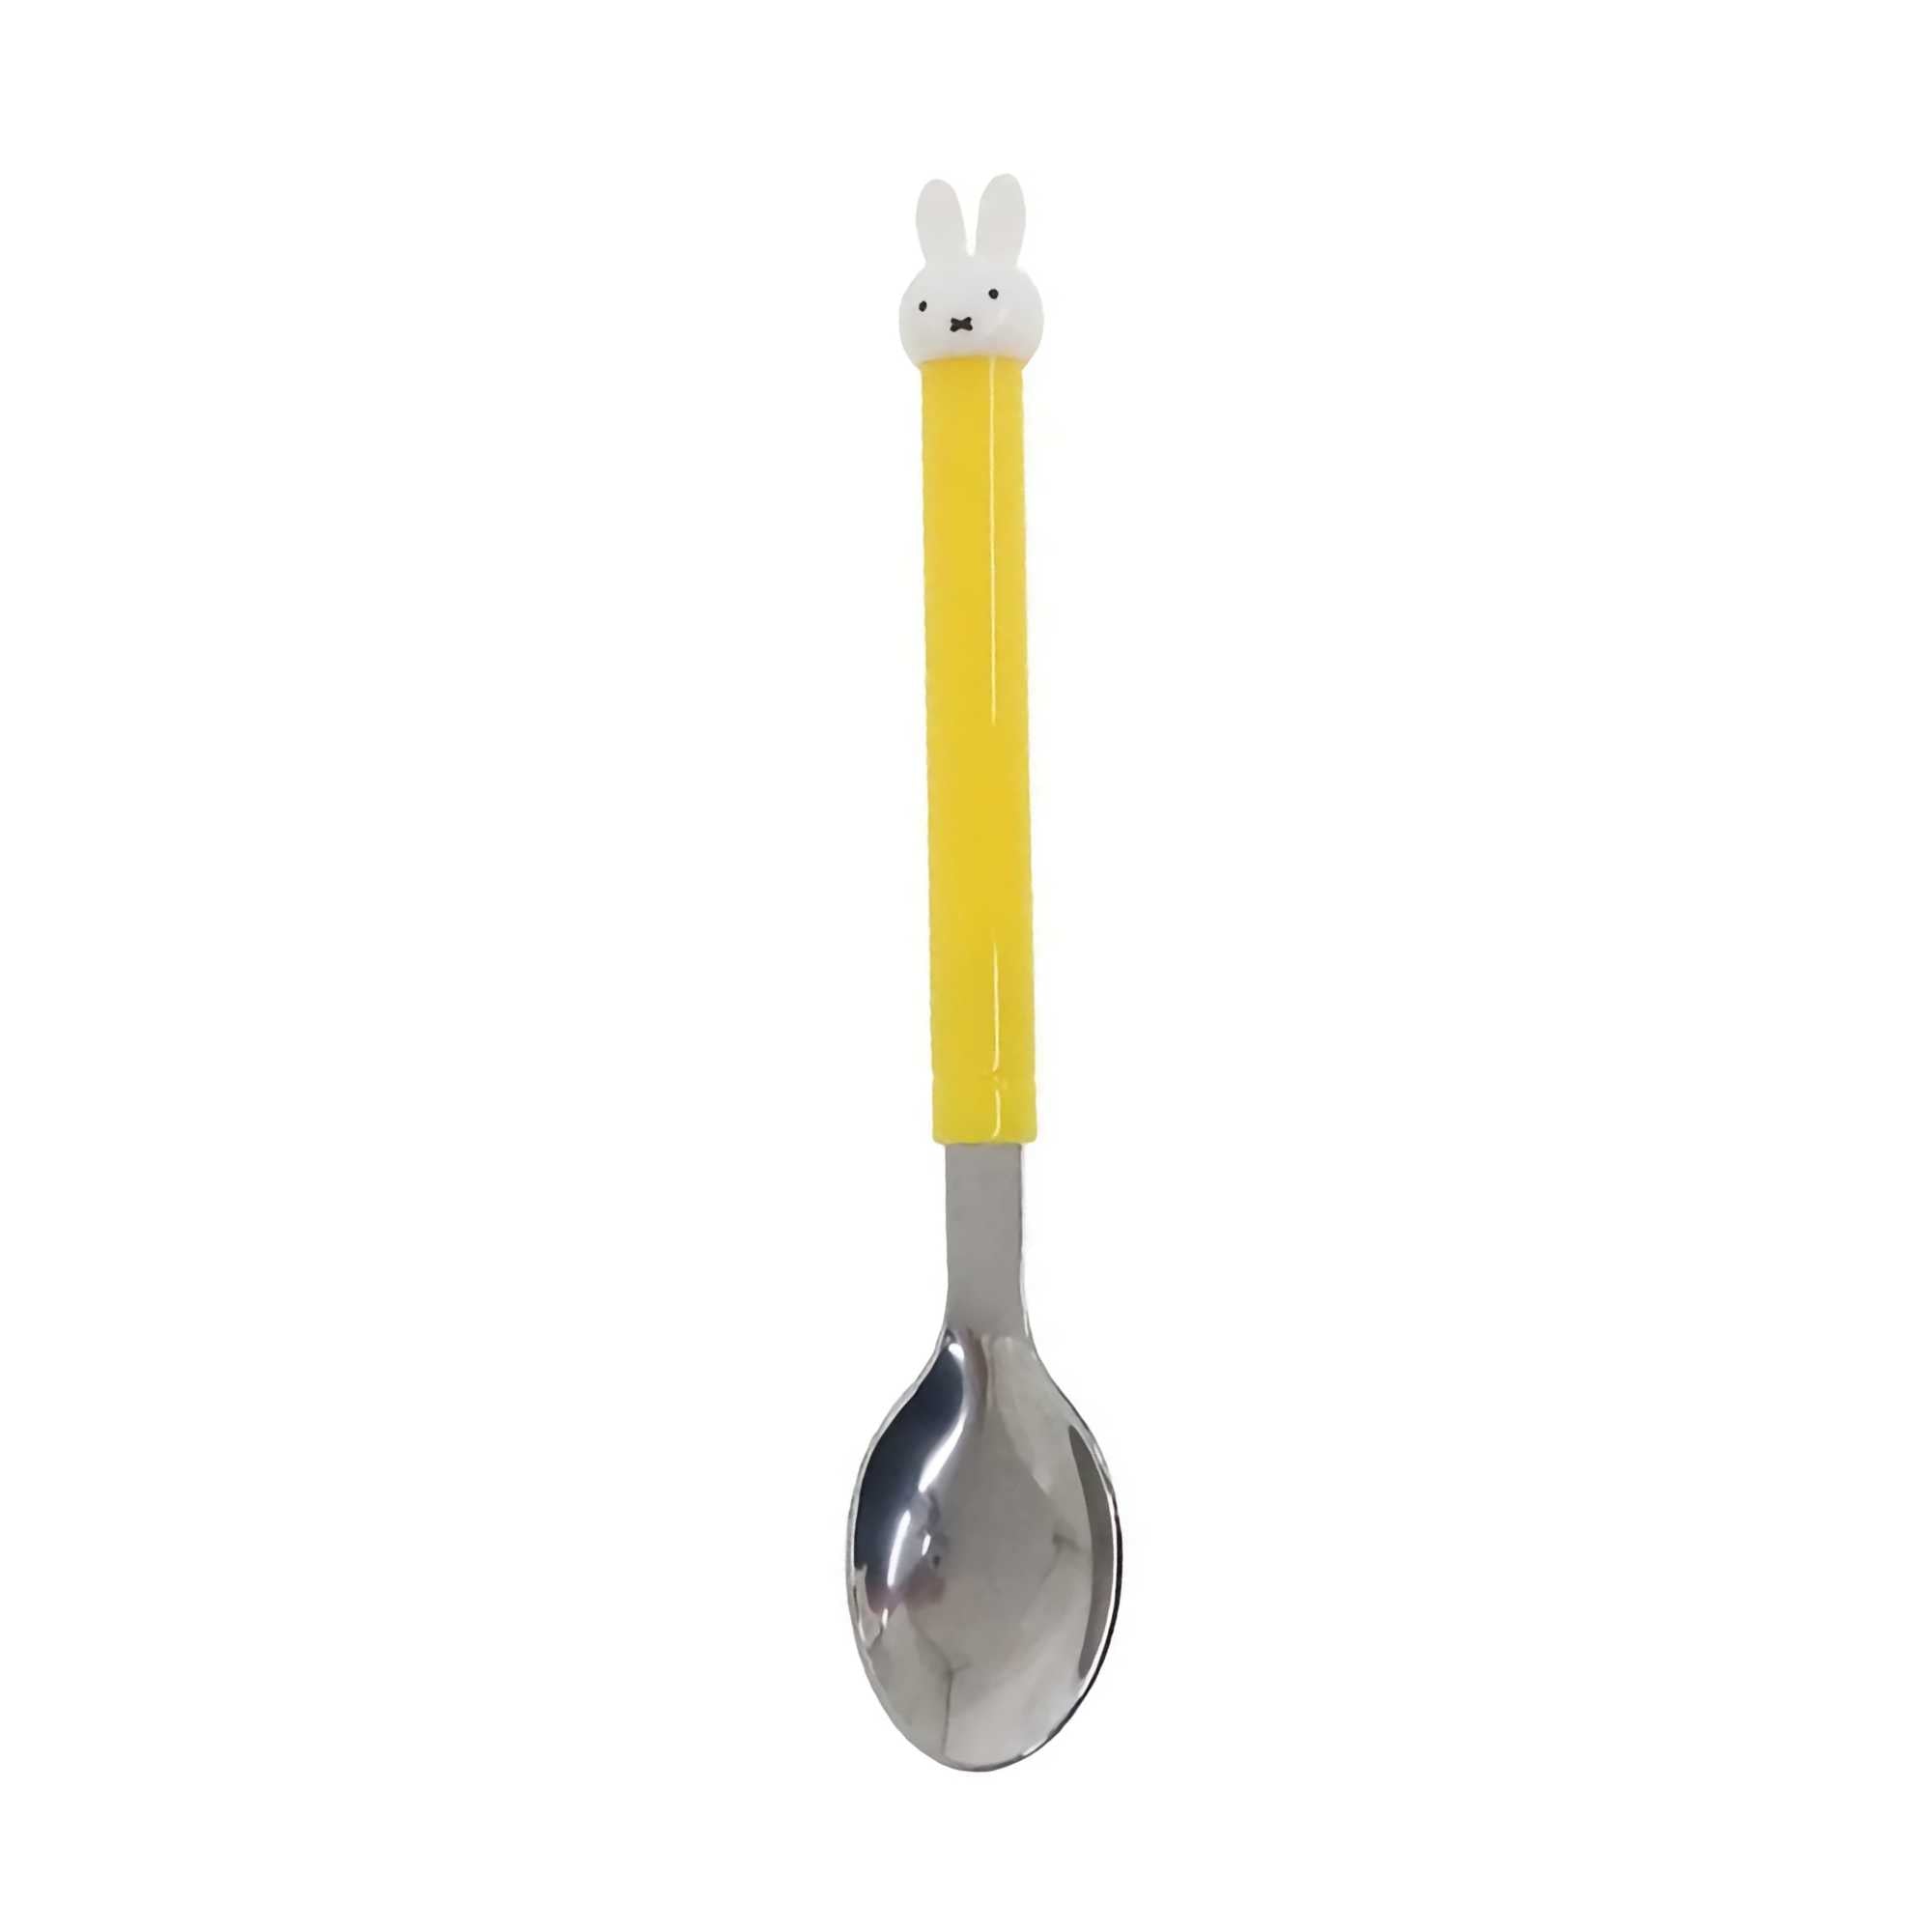 Miffy Mascot Spoon, yellow